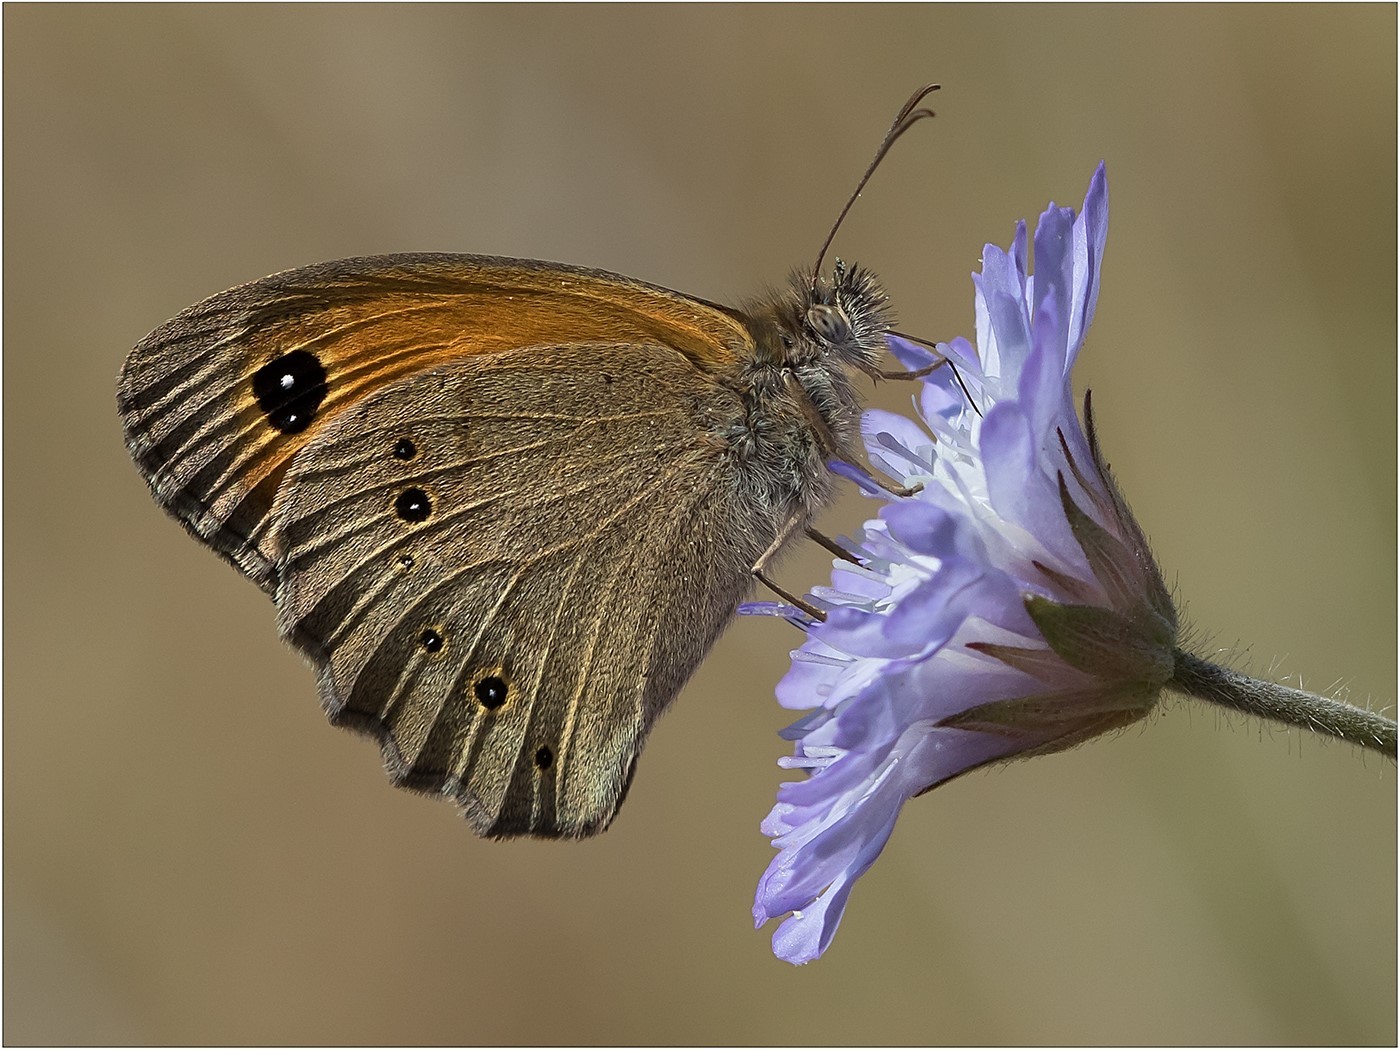 Gatekeeper Butterfly on Scabious